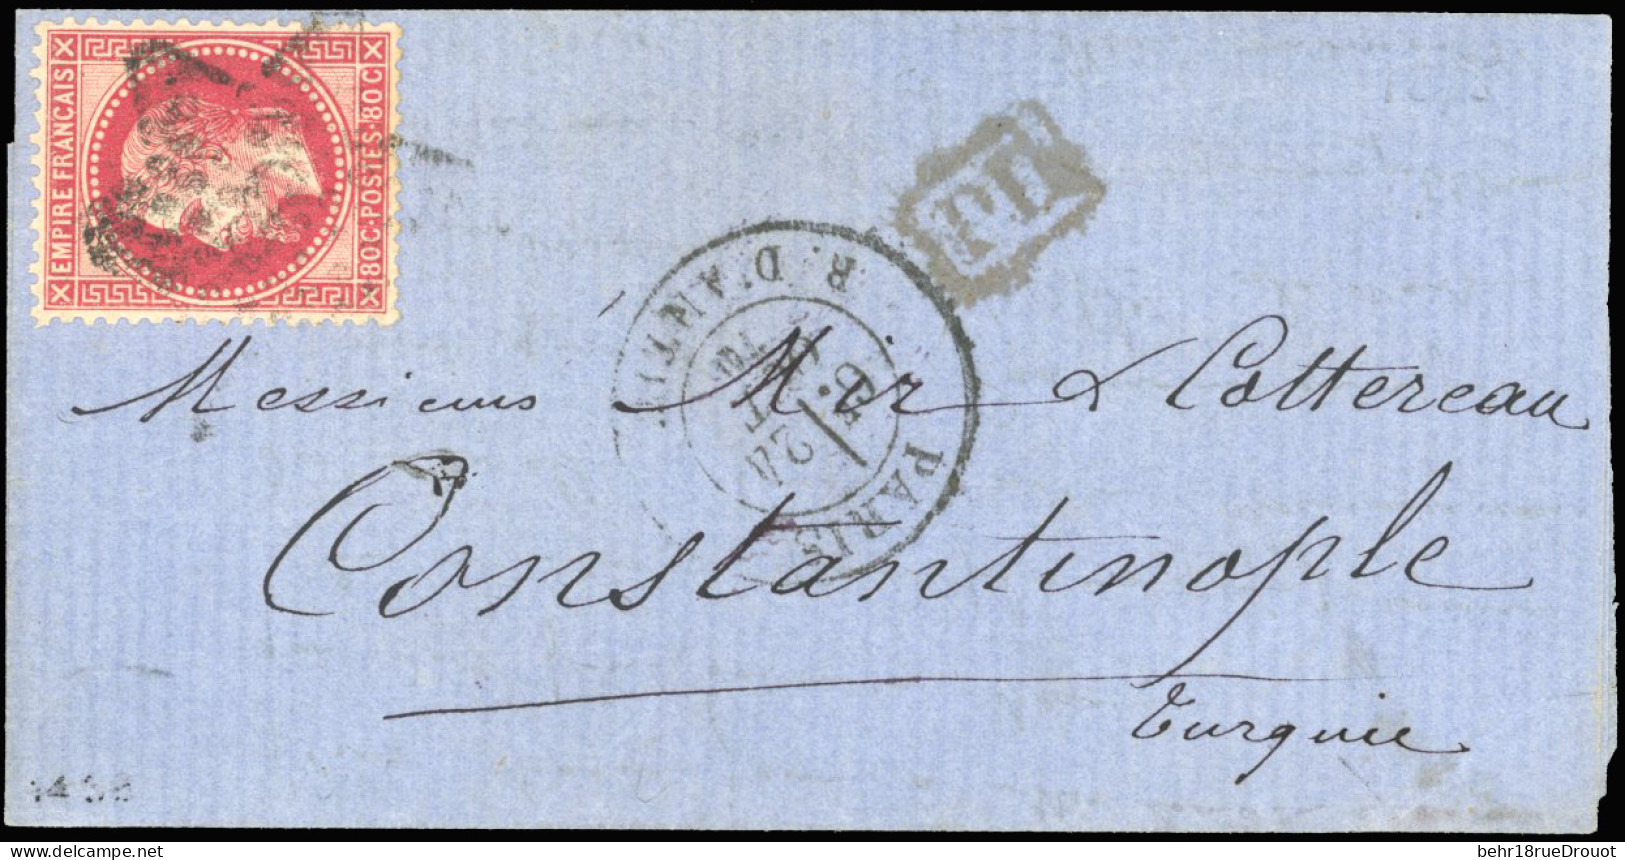 Obl. 32 - LE MONTGOLFIER. 80c. Rose Obl. S/lettre Frappée Du CàD De PARIS - R. D'ANTIN Du 24 Octobre 1870 à Destination  - Guerre De 1870